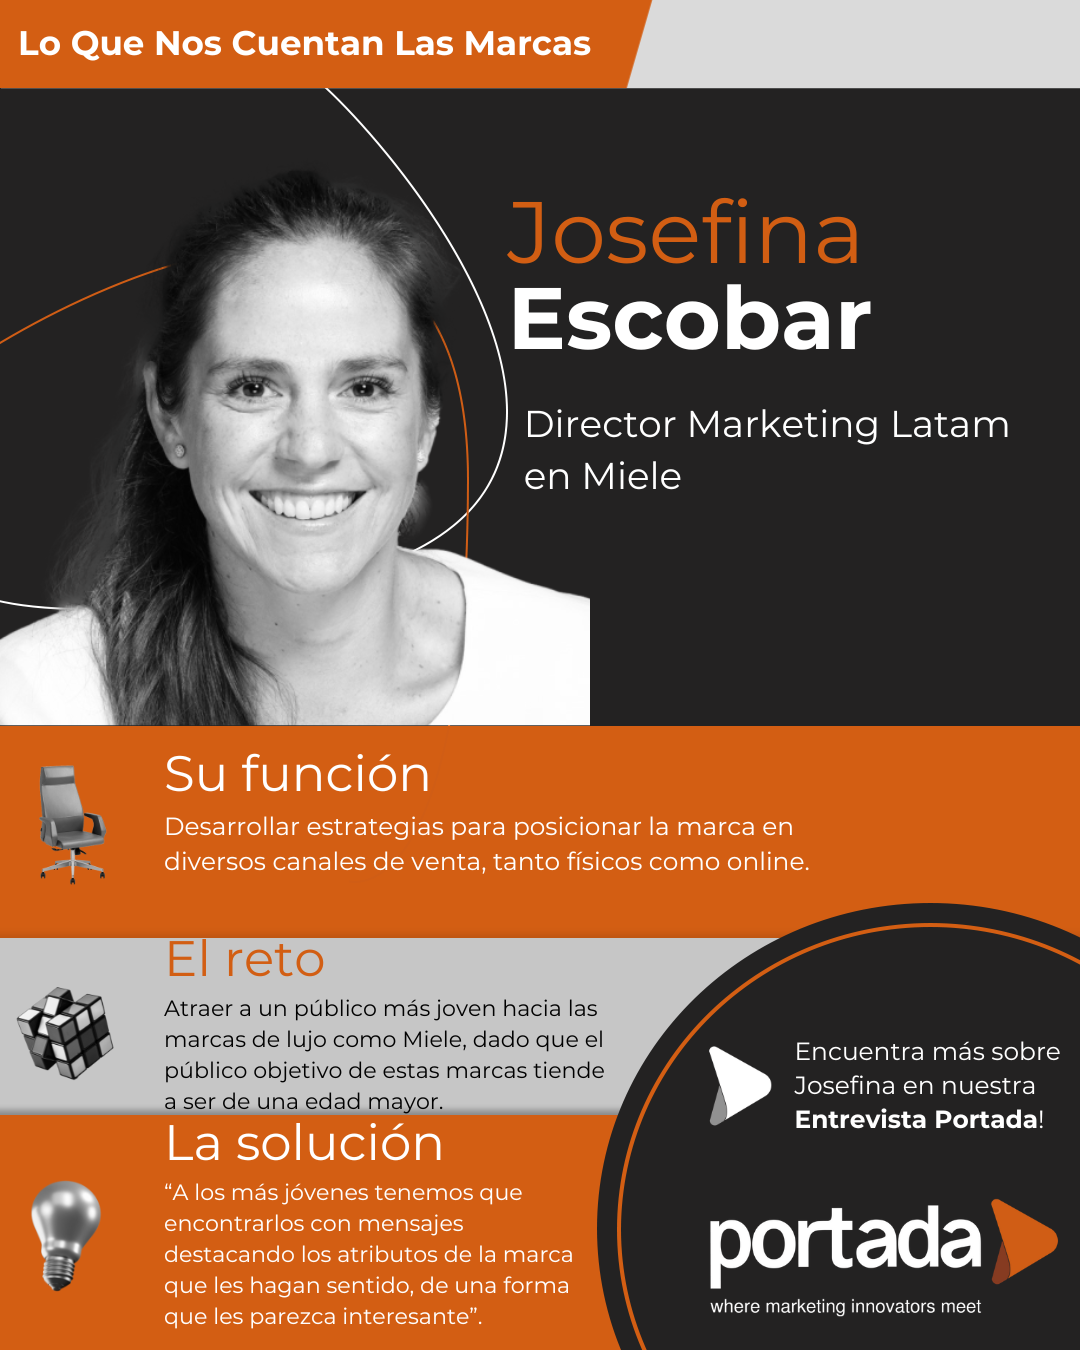 Josefina Escobar: cómo enfrenta Miele el desafío del esfuerzo de ventas D2C